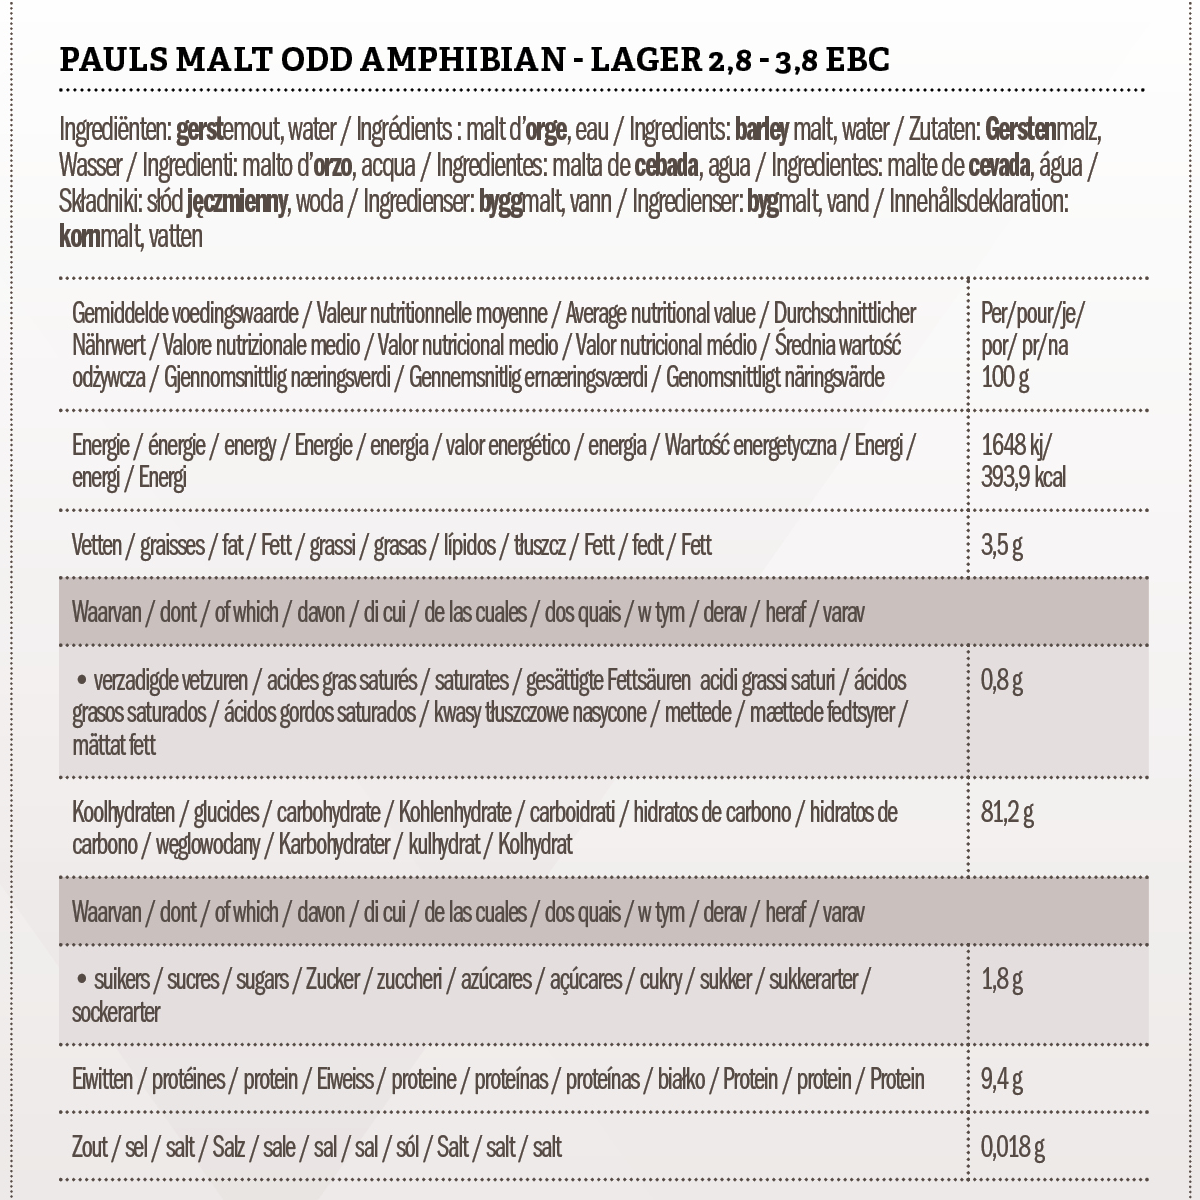 Pauls Malt Odd Amphibian - Lager 2,8 - 3,8 EBC 5 kg